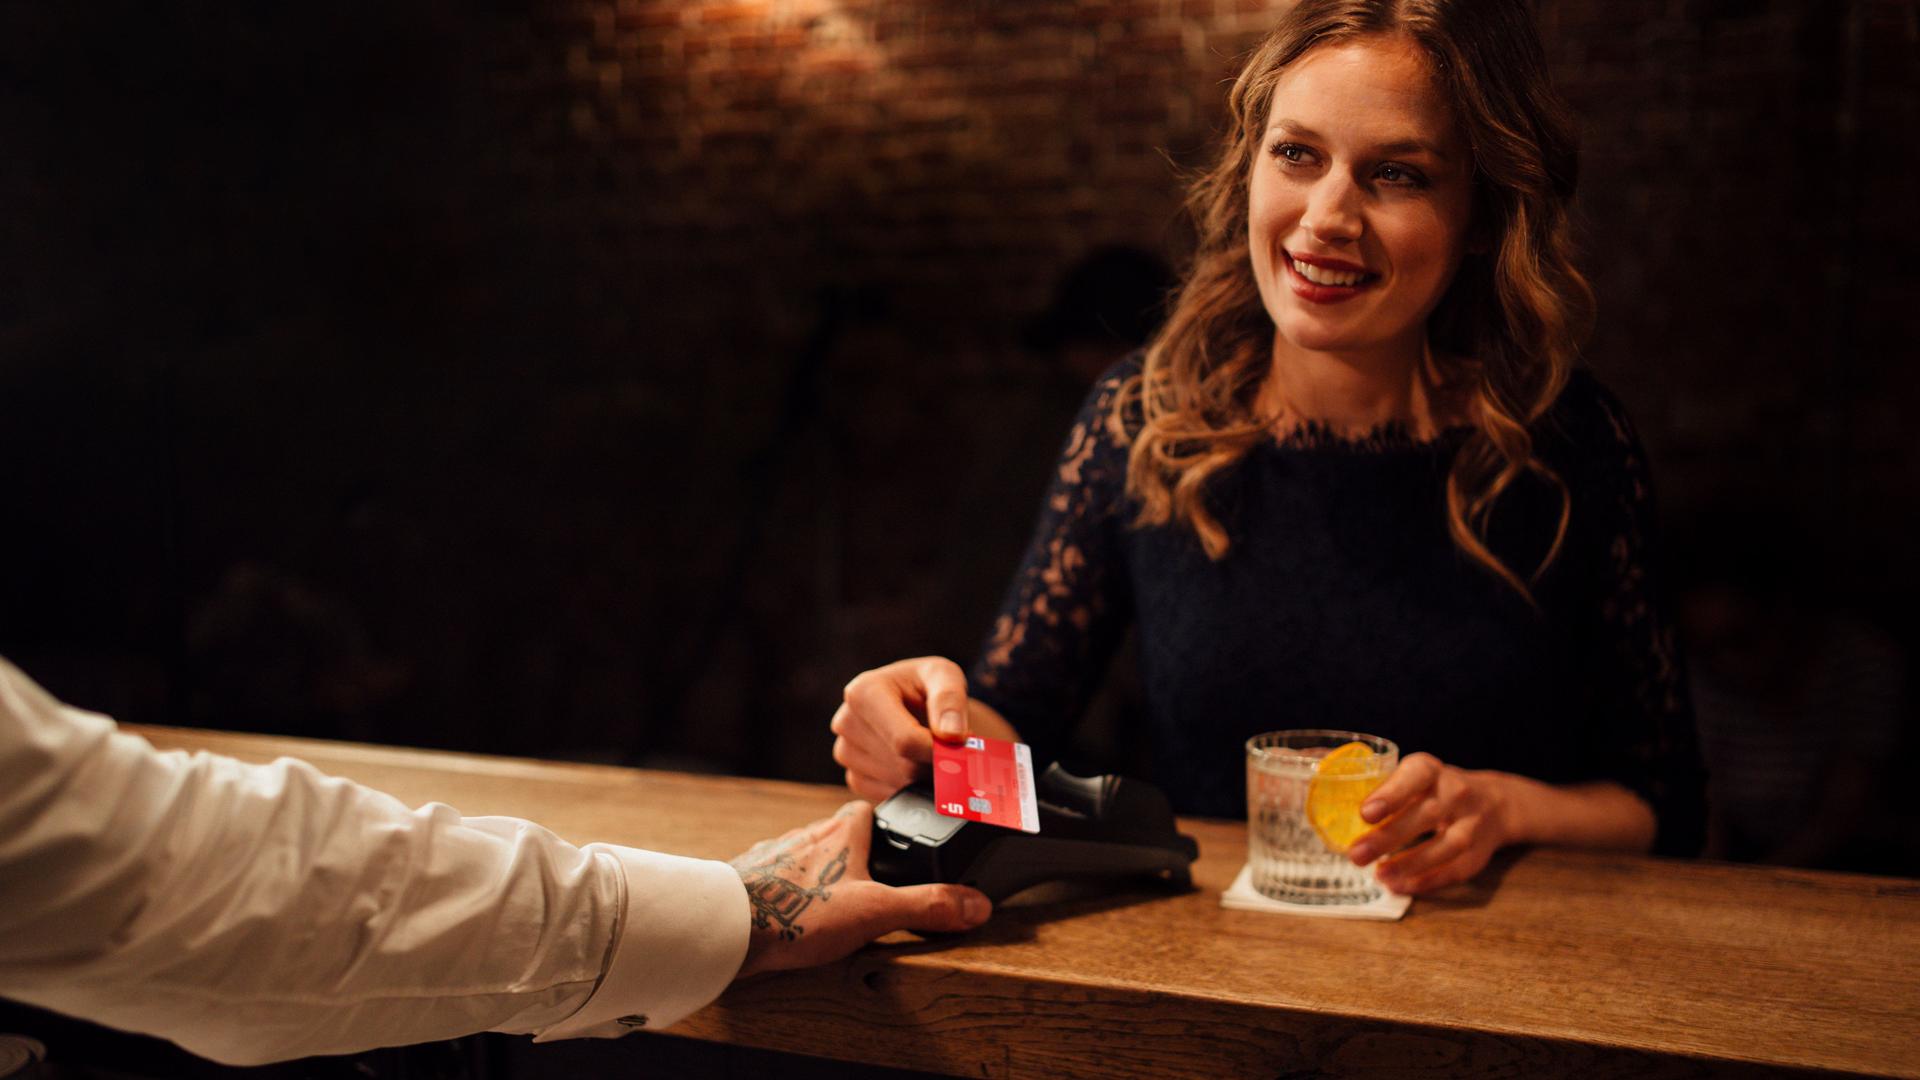 Festlich gekleidete junge Frau in einer Bar zahlt kontaktlos mit ihrer Sparkassenkarte. Sie lächelt den Barkeeper dabei an.